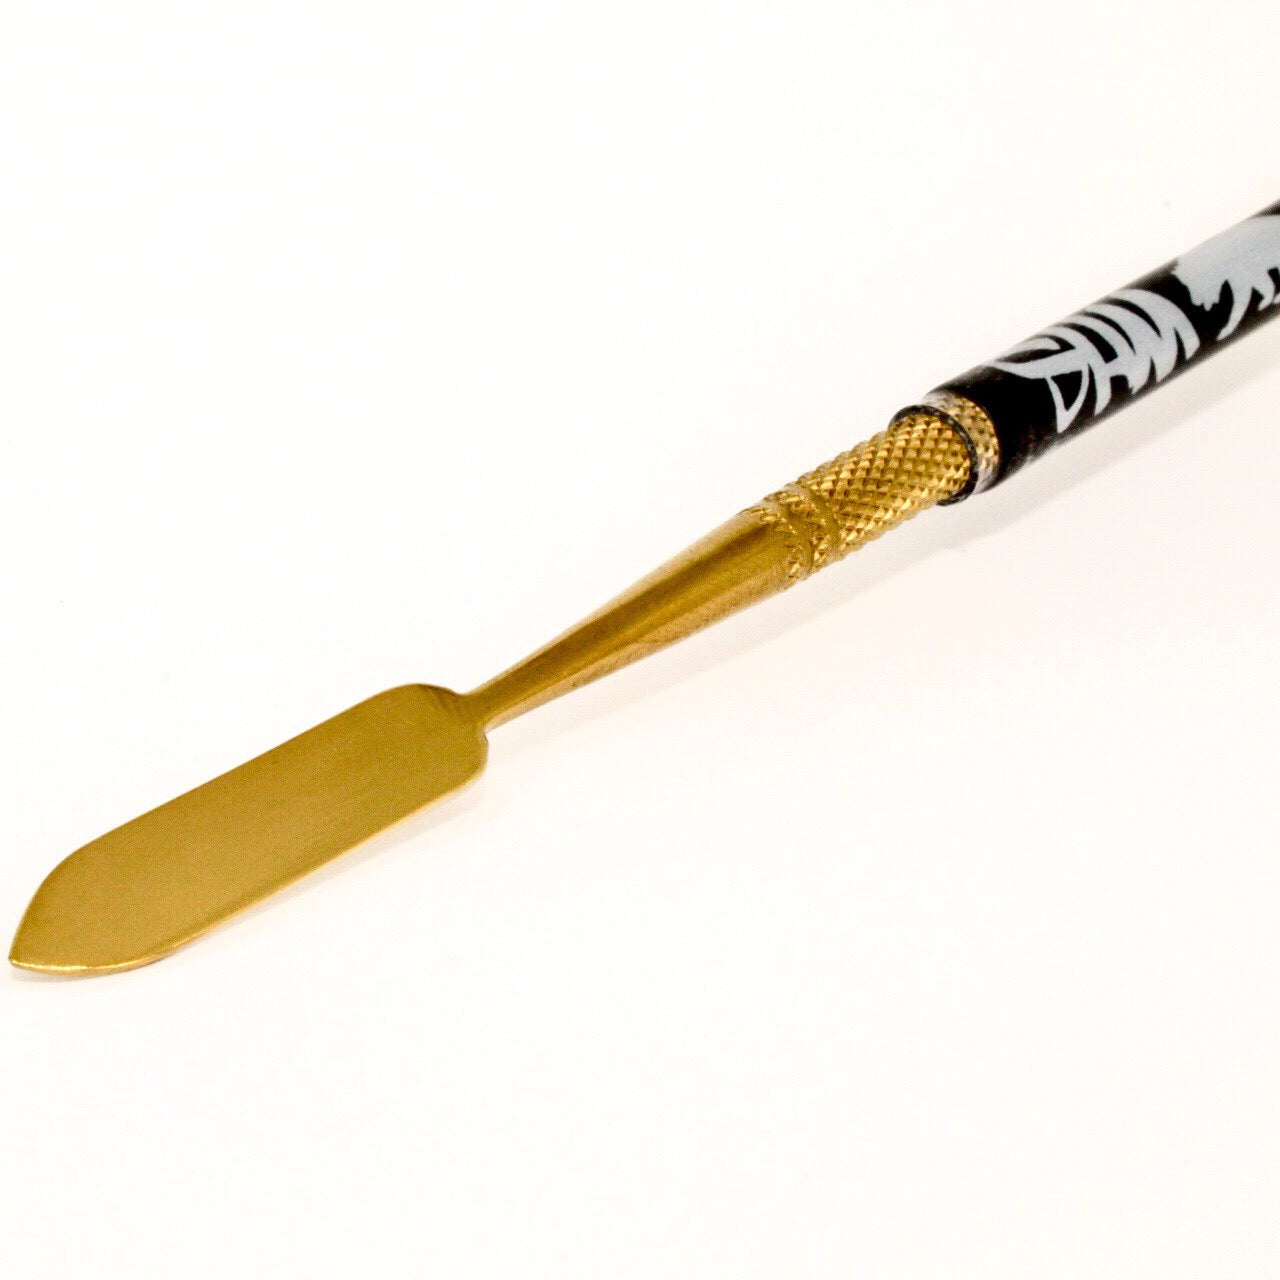  Dab Tools for Wax - Herramientas de tallado de cera de acero  inoxidable, herramienta de cera de doble punta de 4.75 pulgadas con mango  moleteado antideslizante para tallar cera esculpir raspado